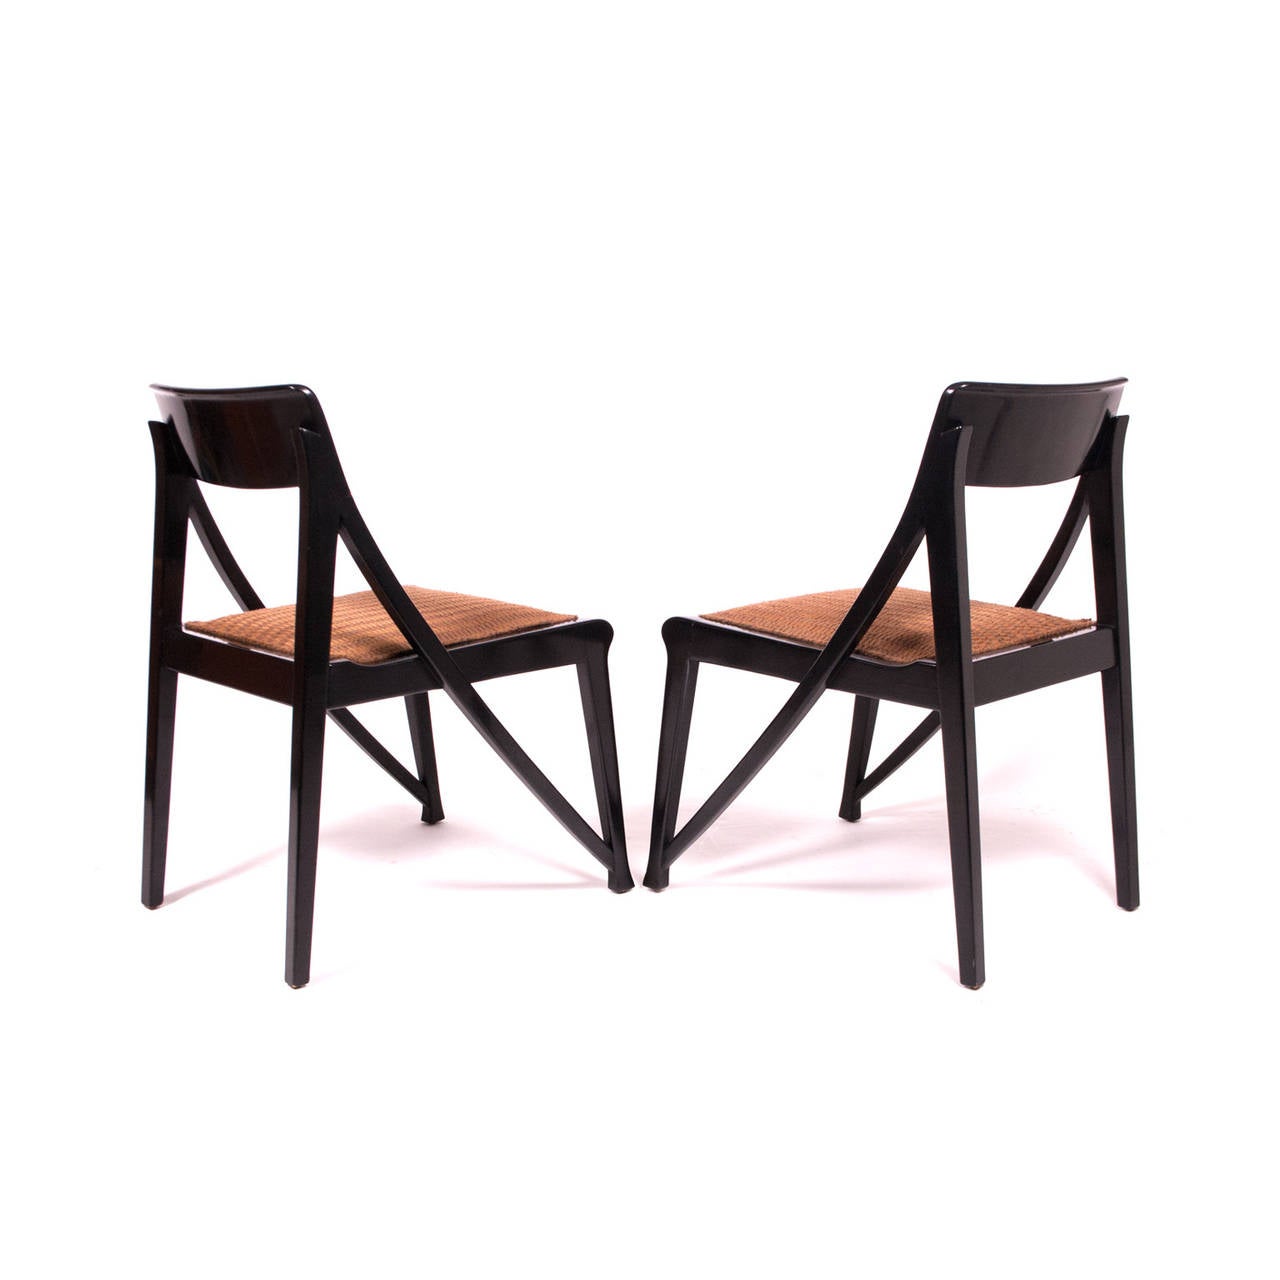 Art Nouveau Riemerschmid Chairs, Jack Lenor Larsen Edition